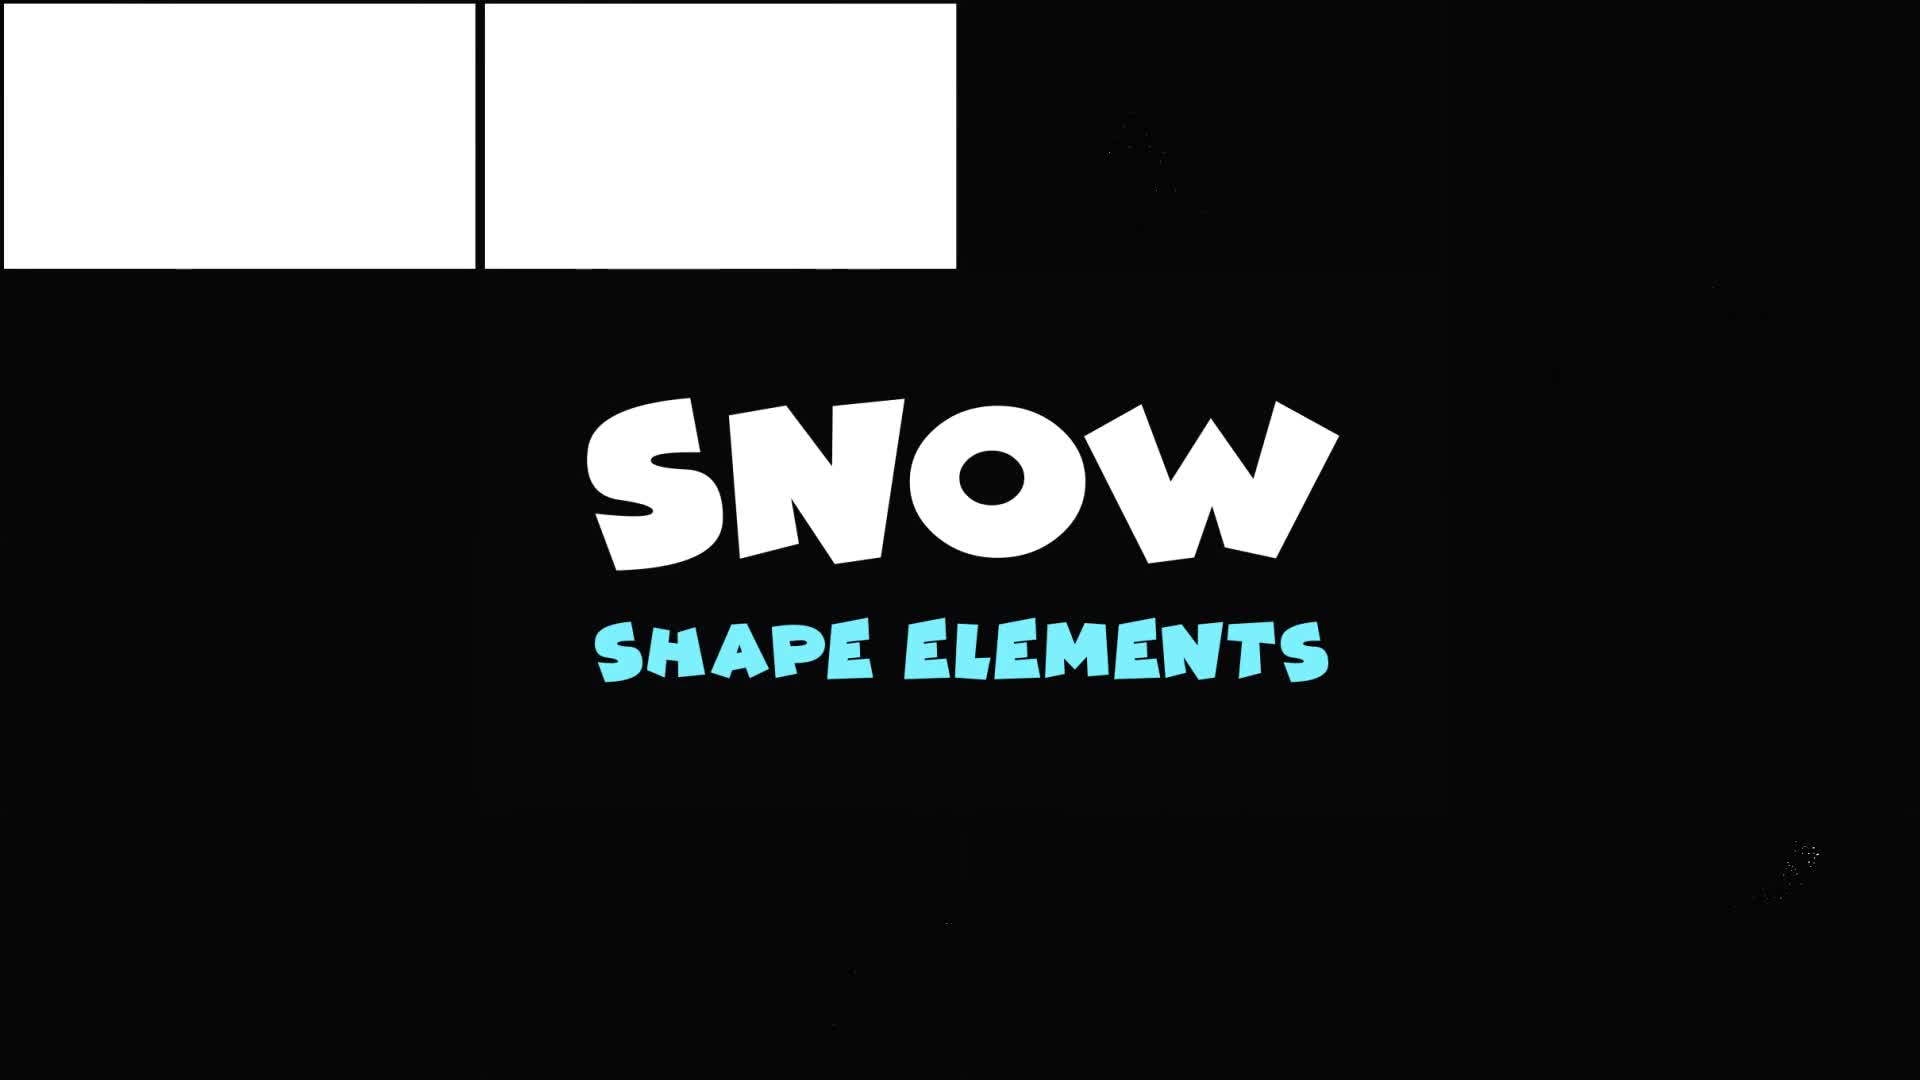 Magic Snow Elements | Premiere Pro MOGRT Videohive 29656735 Premiere Pro Image 1